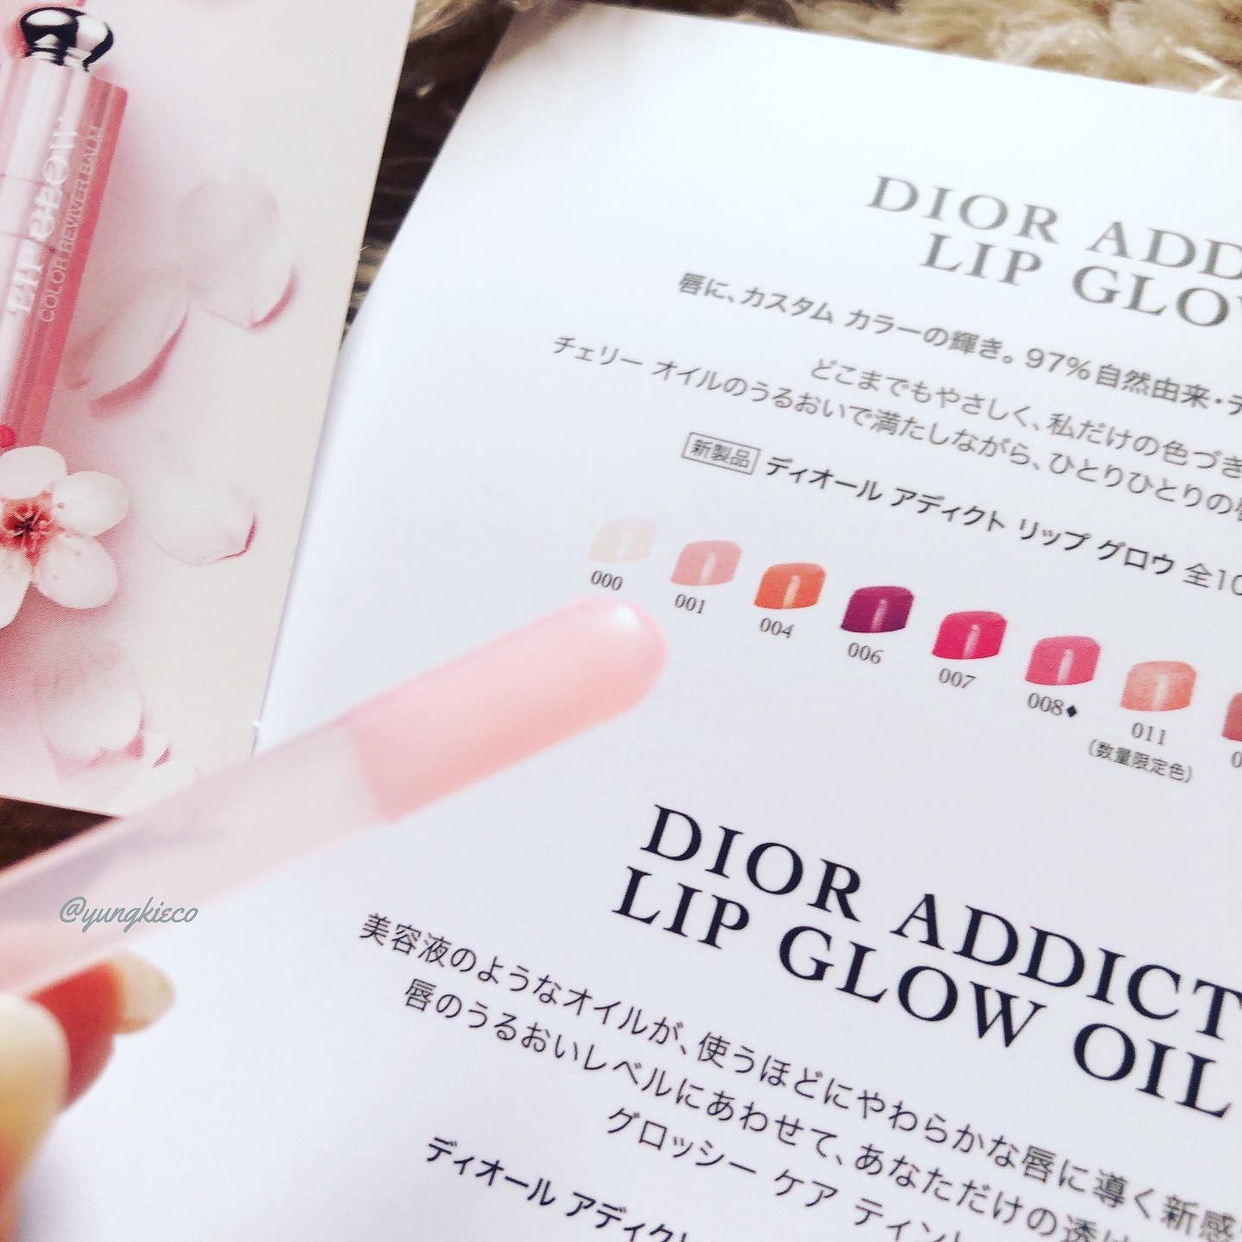 Dior(ディオール) アディクト リップ グロウの良い点・メリットに関するyungさんの口コミ画像2